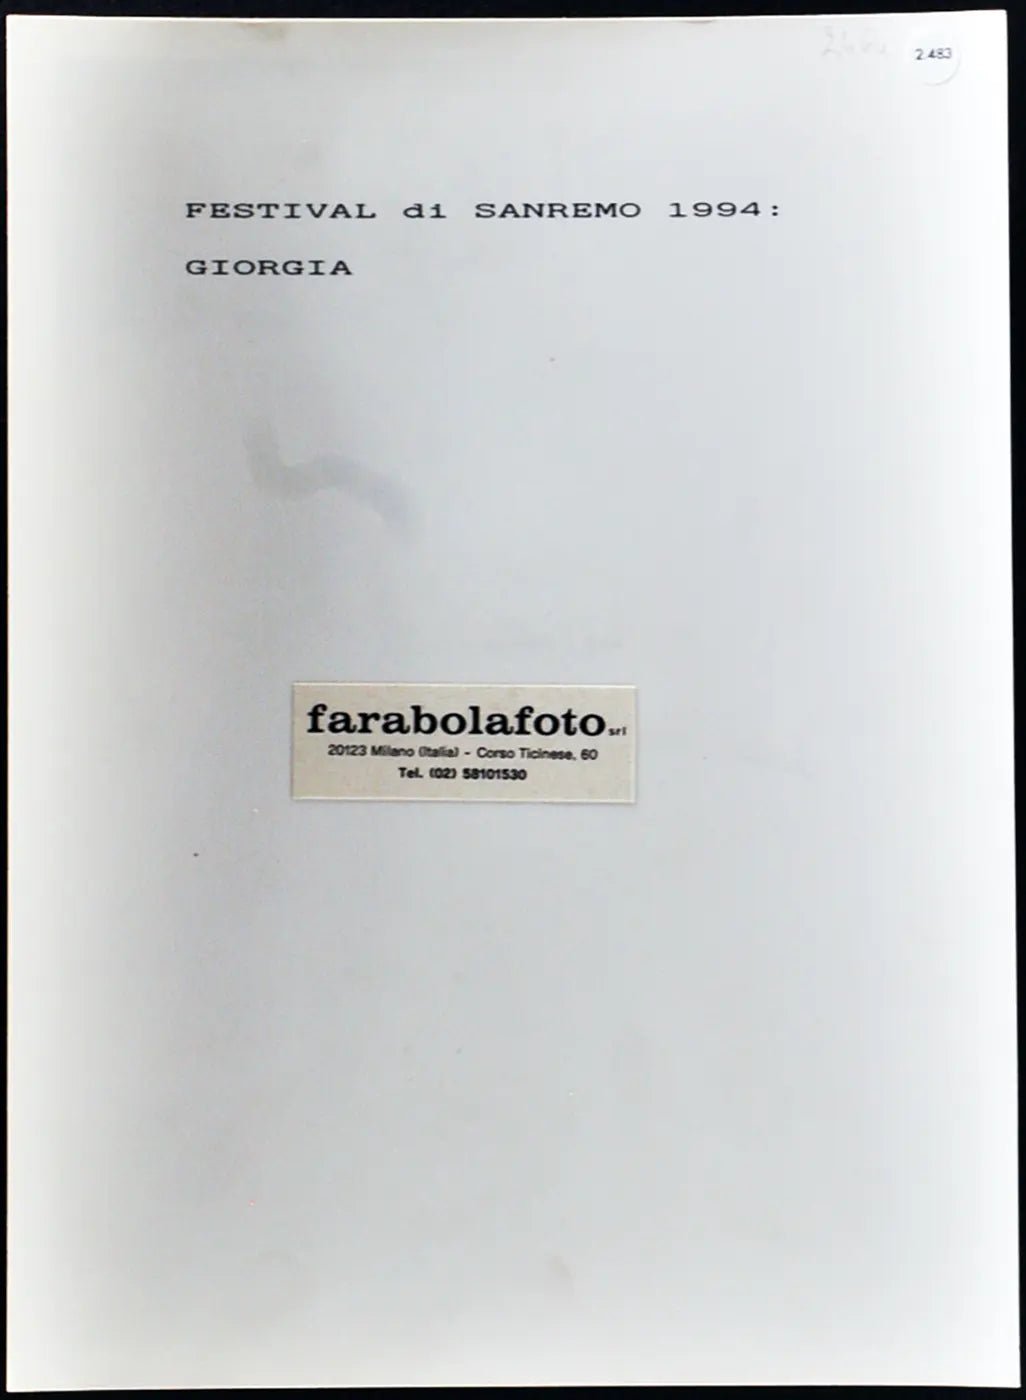 Giorgia Festival di Sanremo 1994 Ft 2483 - Stampa 24x18 cm - Farabola Stampa ai sali d'argento